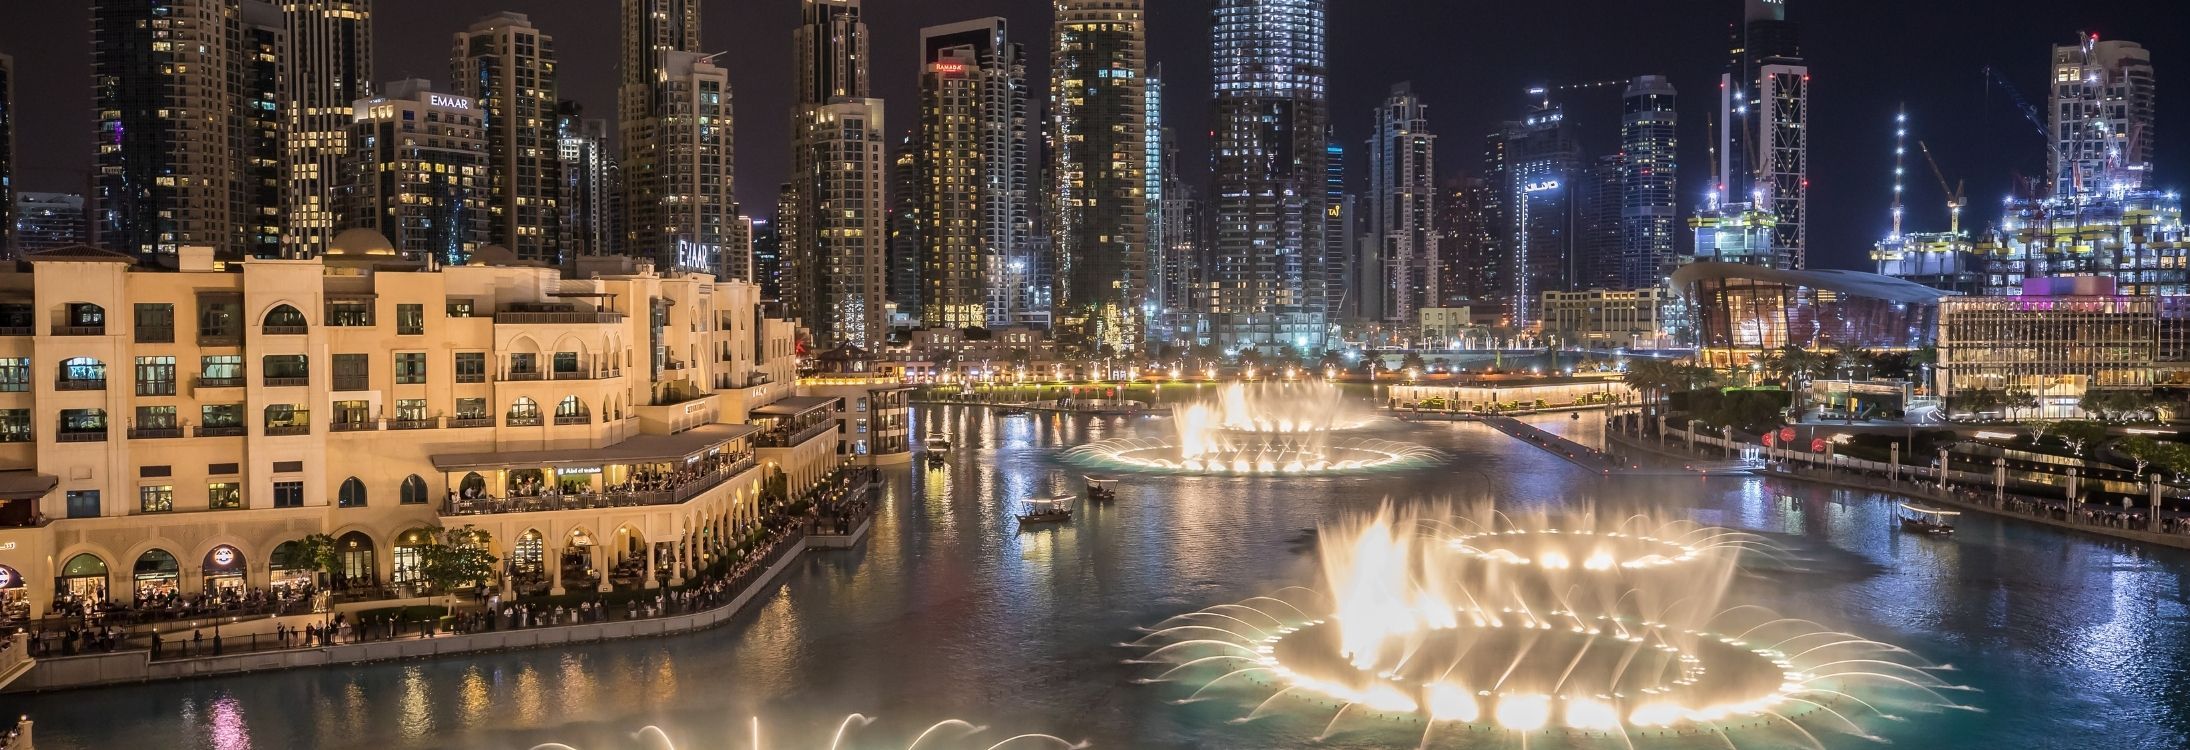 Top Events In Dubai In 2016